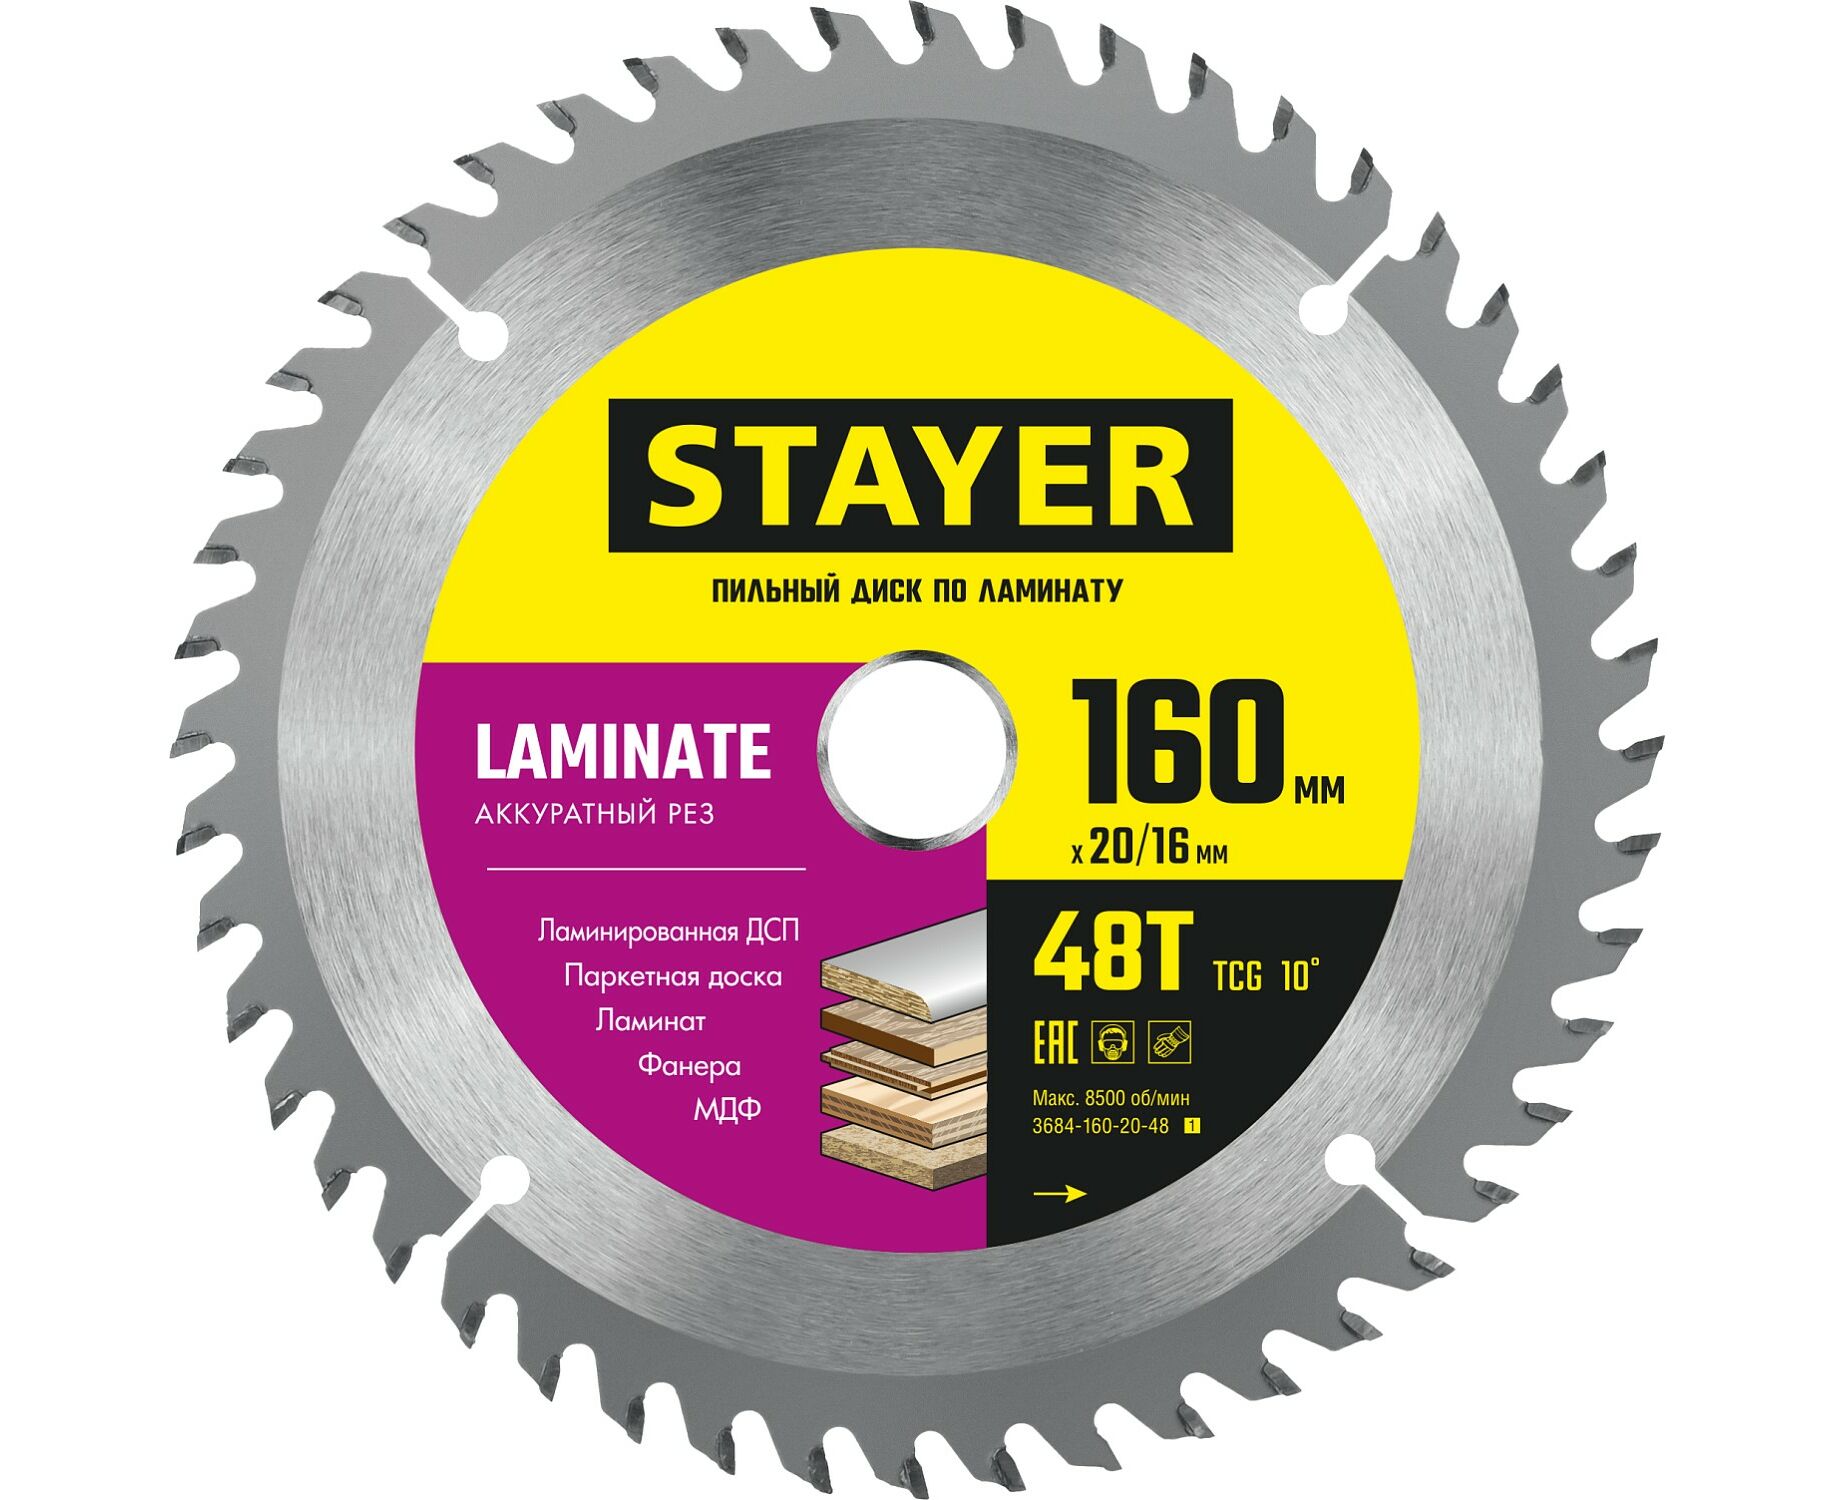 Пильный диск STAYER LAMINATE 160 x 20/16мм 48T, по ламинату, аккуратный рез пильный диск stayer laminate 185 x 30 20мм 56t по ламинату аккуратный рез